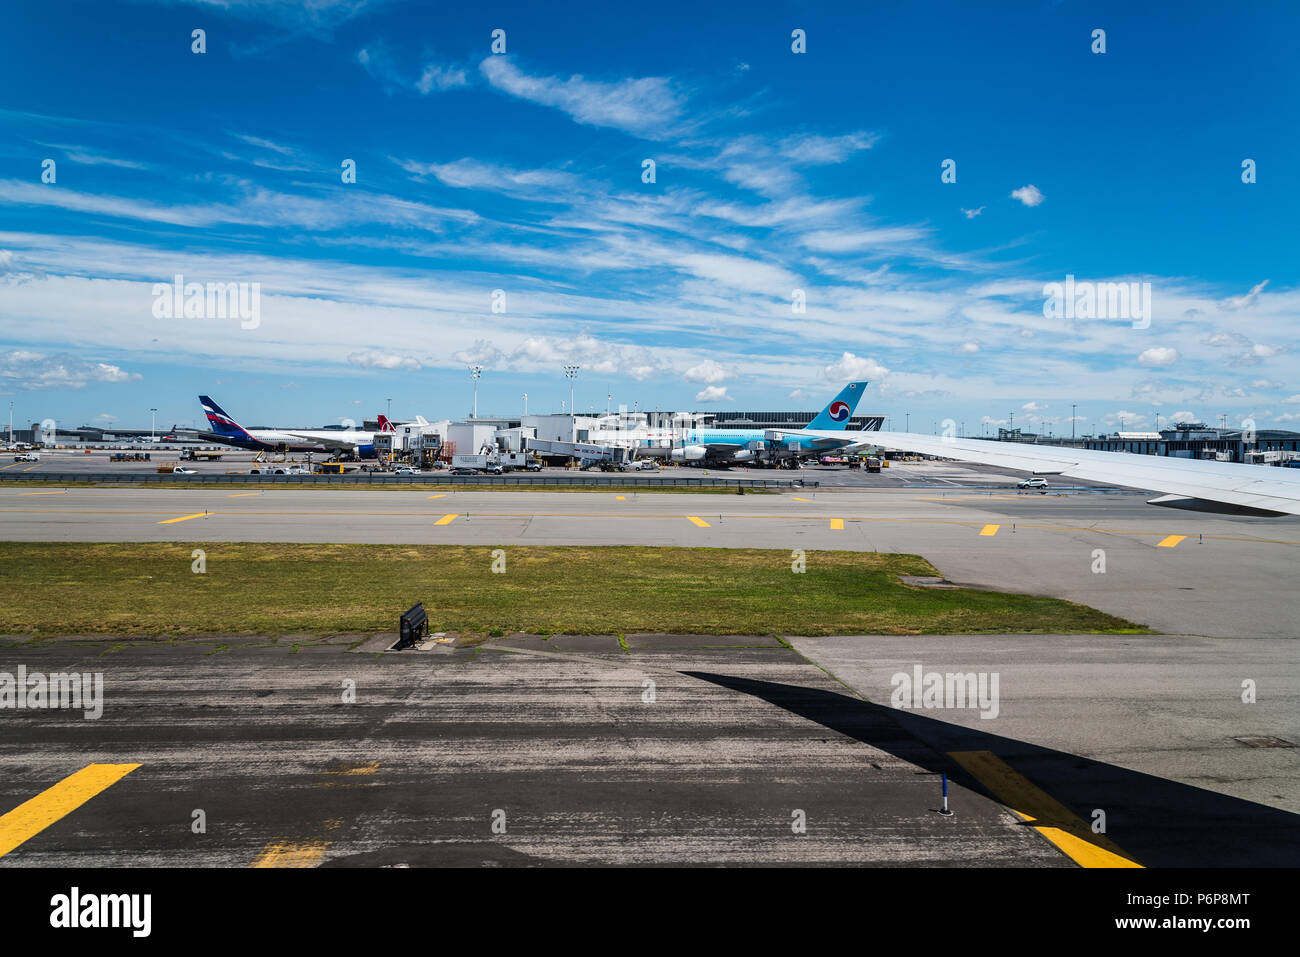 La città di New York, Stati Uniti d'America - 20 Giugno 2018: velivoli in pista dell'Aeroporto JFK contro il cielo blu Foto Stock